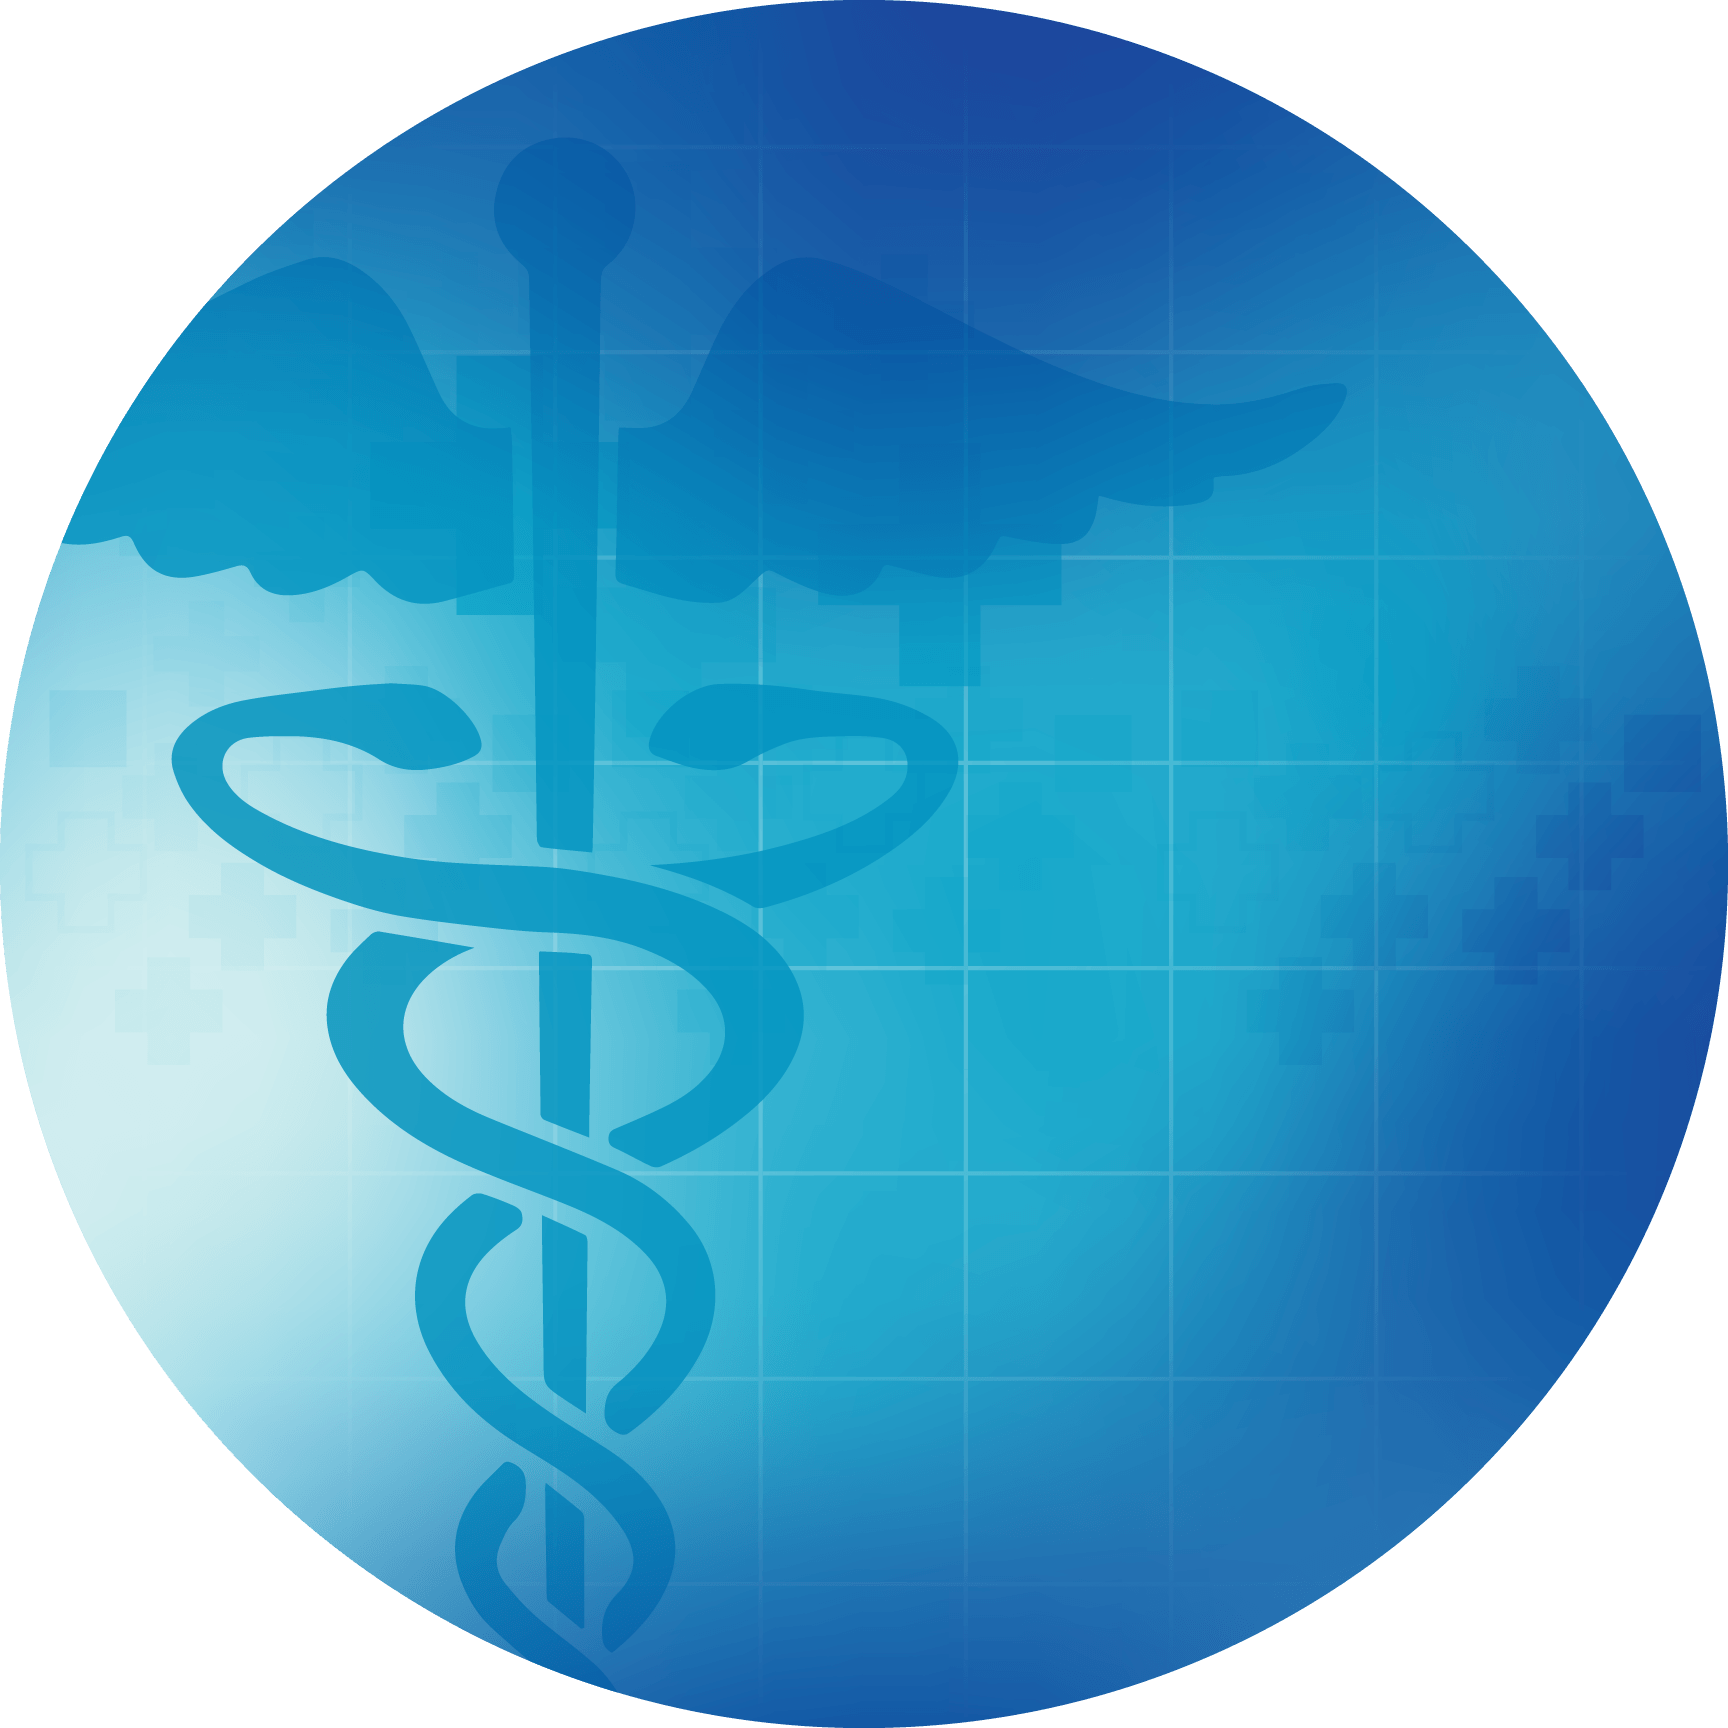 Medicaid & Autism blog image. Stylized photo of the Medicaid logo.